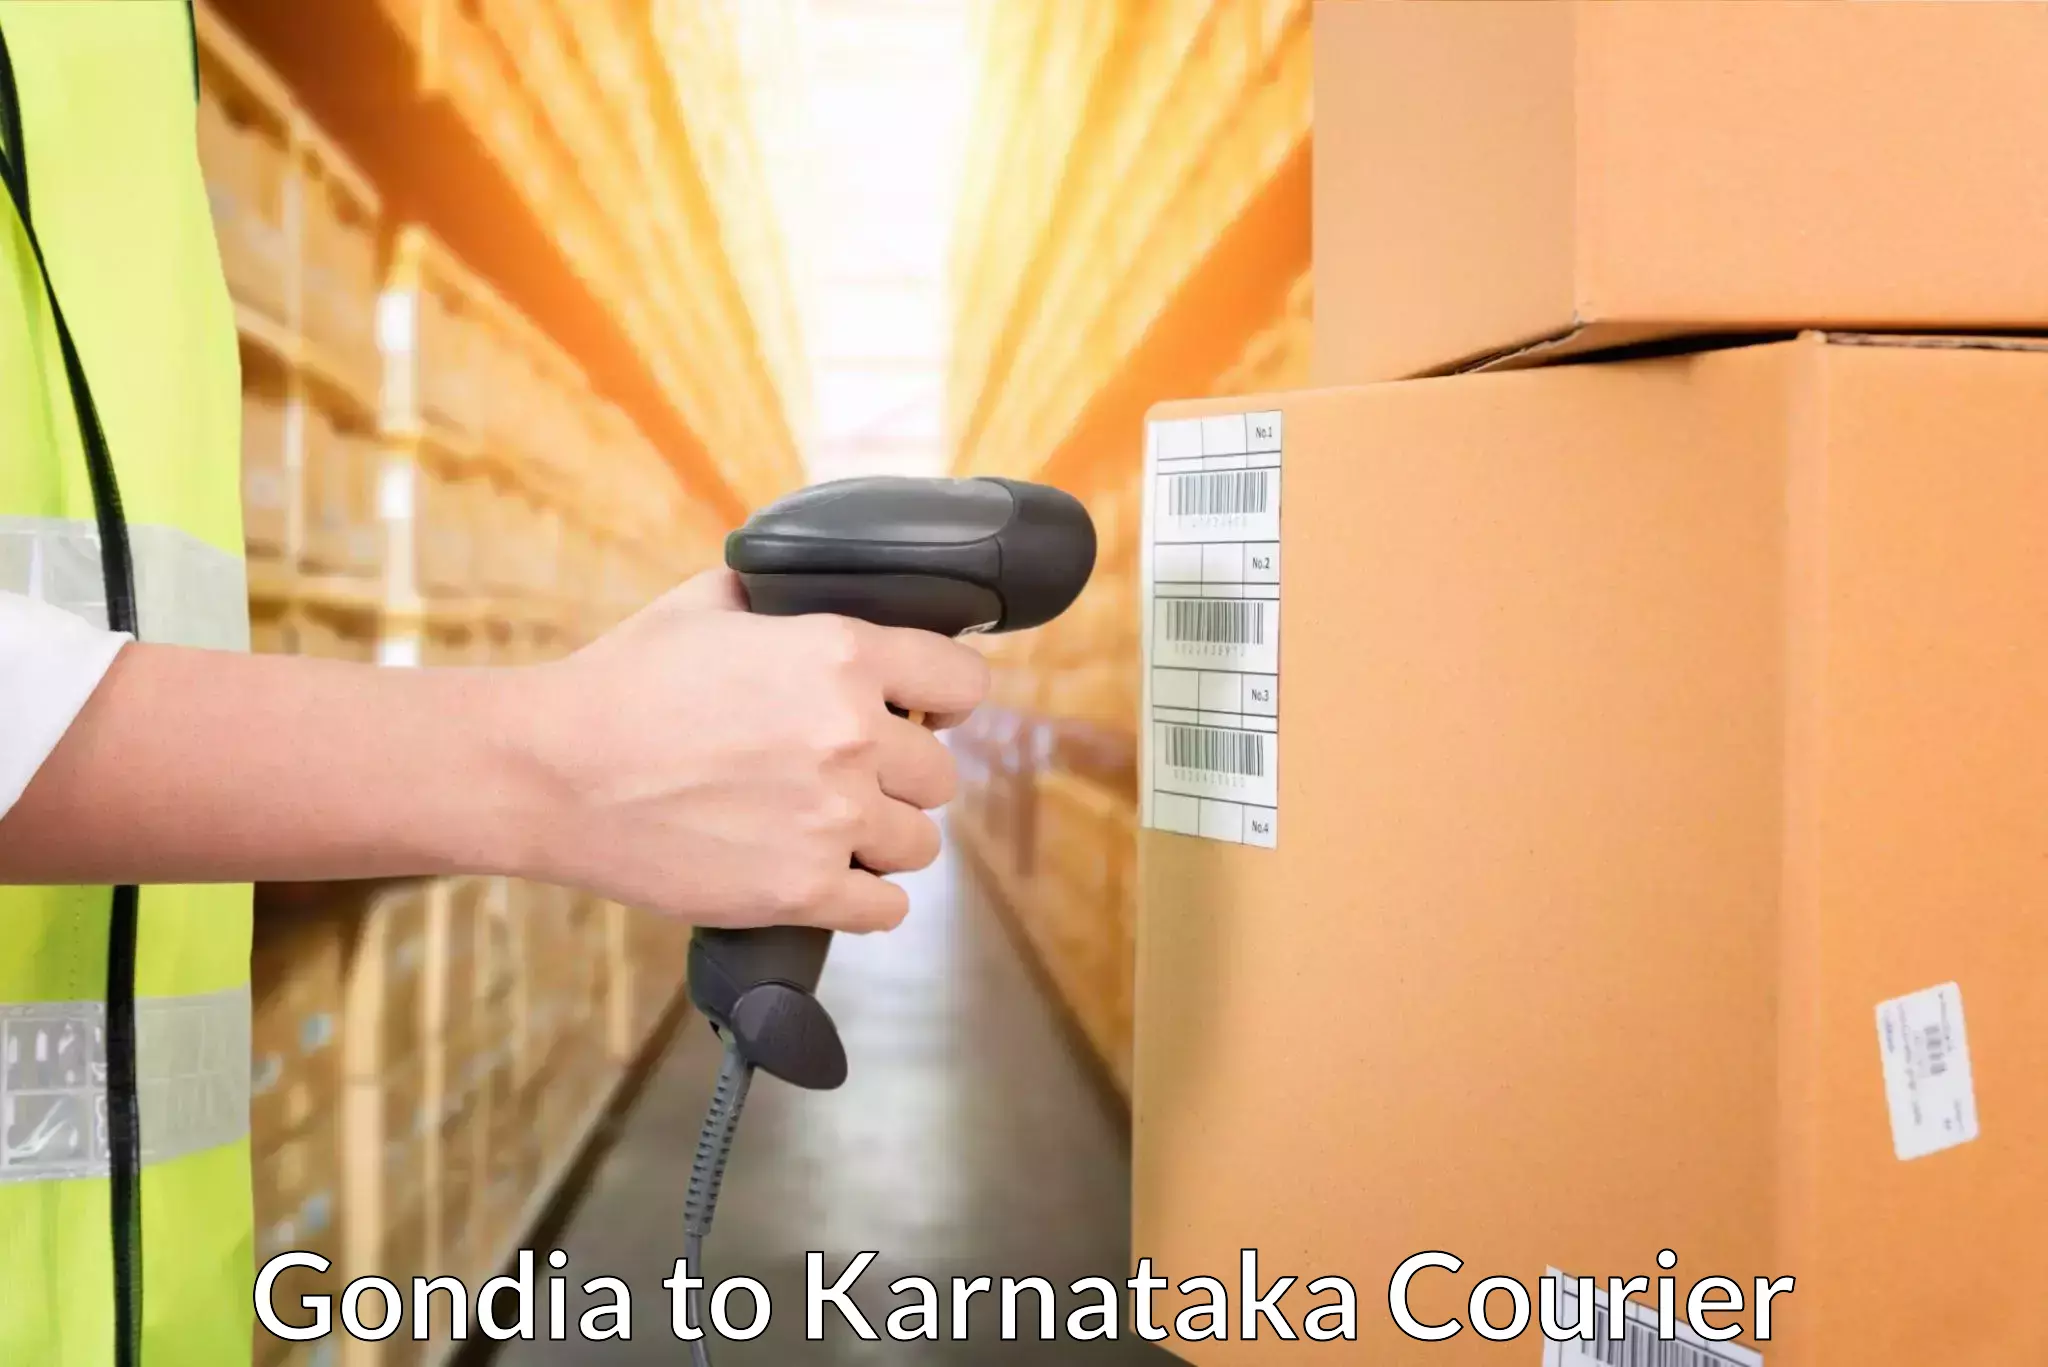 Logistics service provider Gondia to Srirangapatna